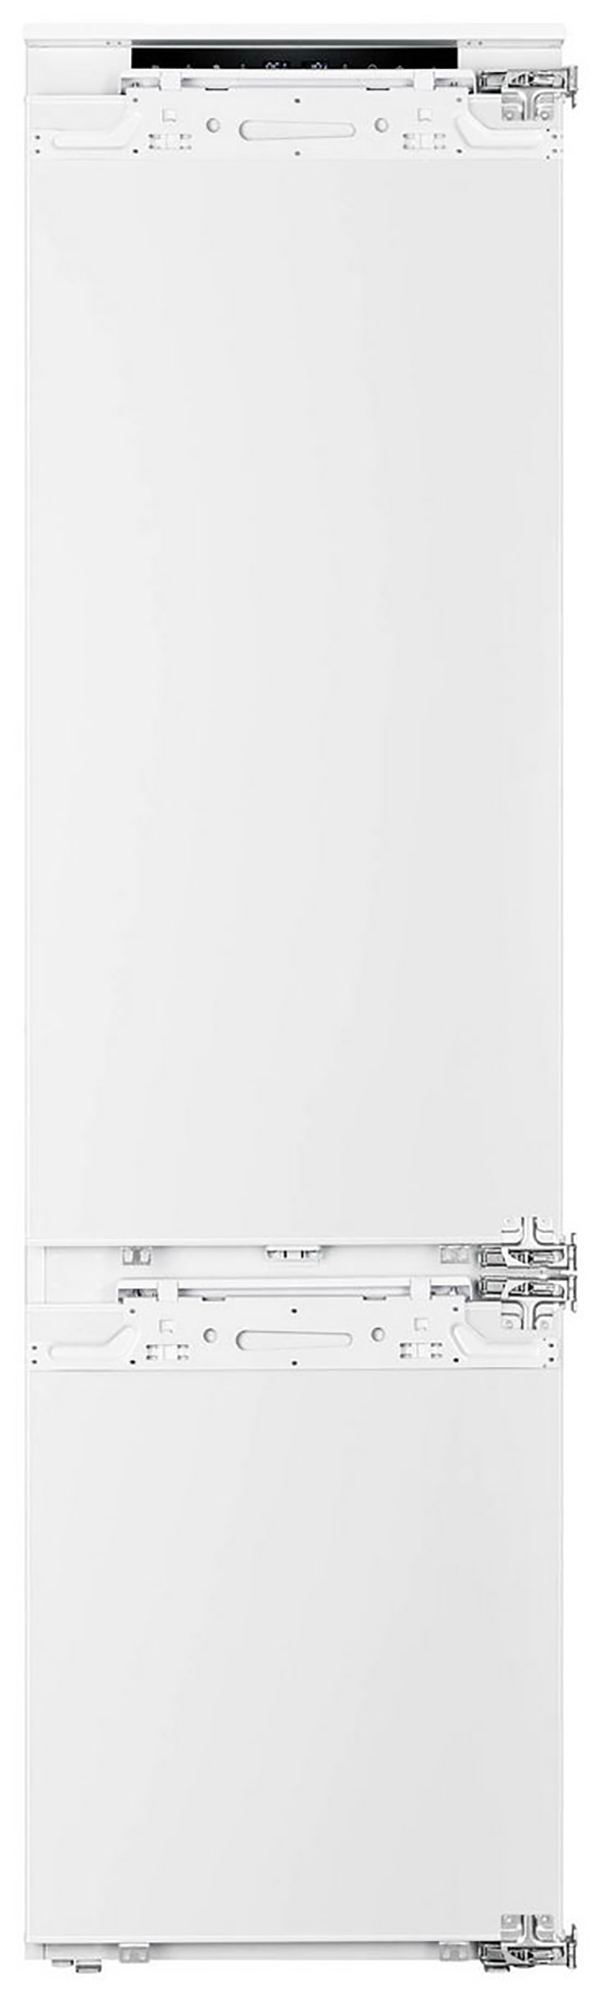 Встраиваемый холодильник Korting KSI 19547 CFNFZ белый встраиваемый двухкамерный холодильник korting ksi 19547 cfnfz